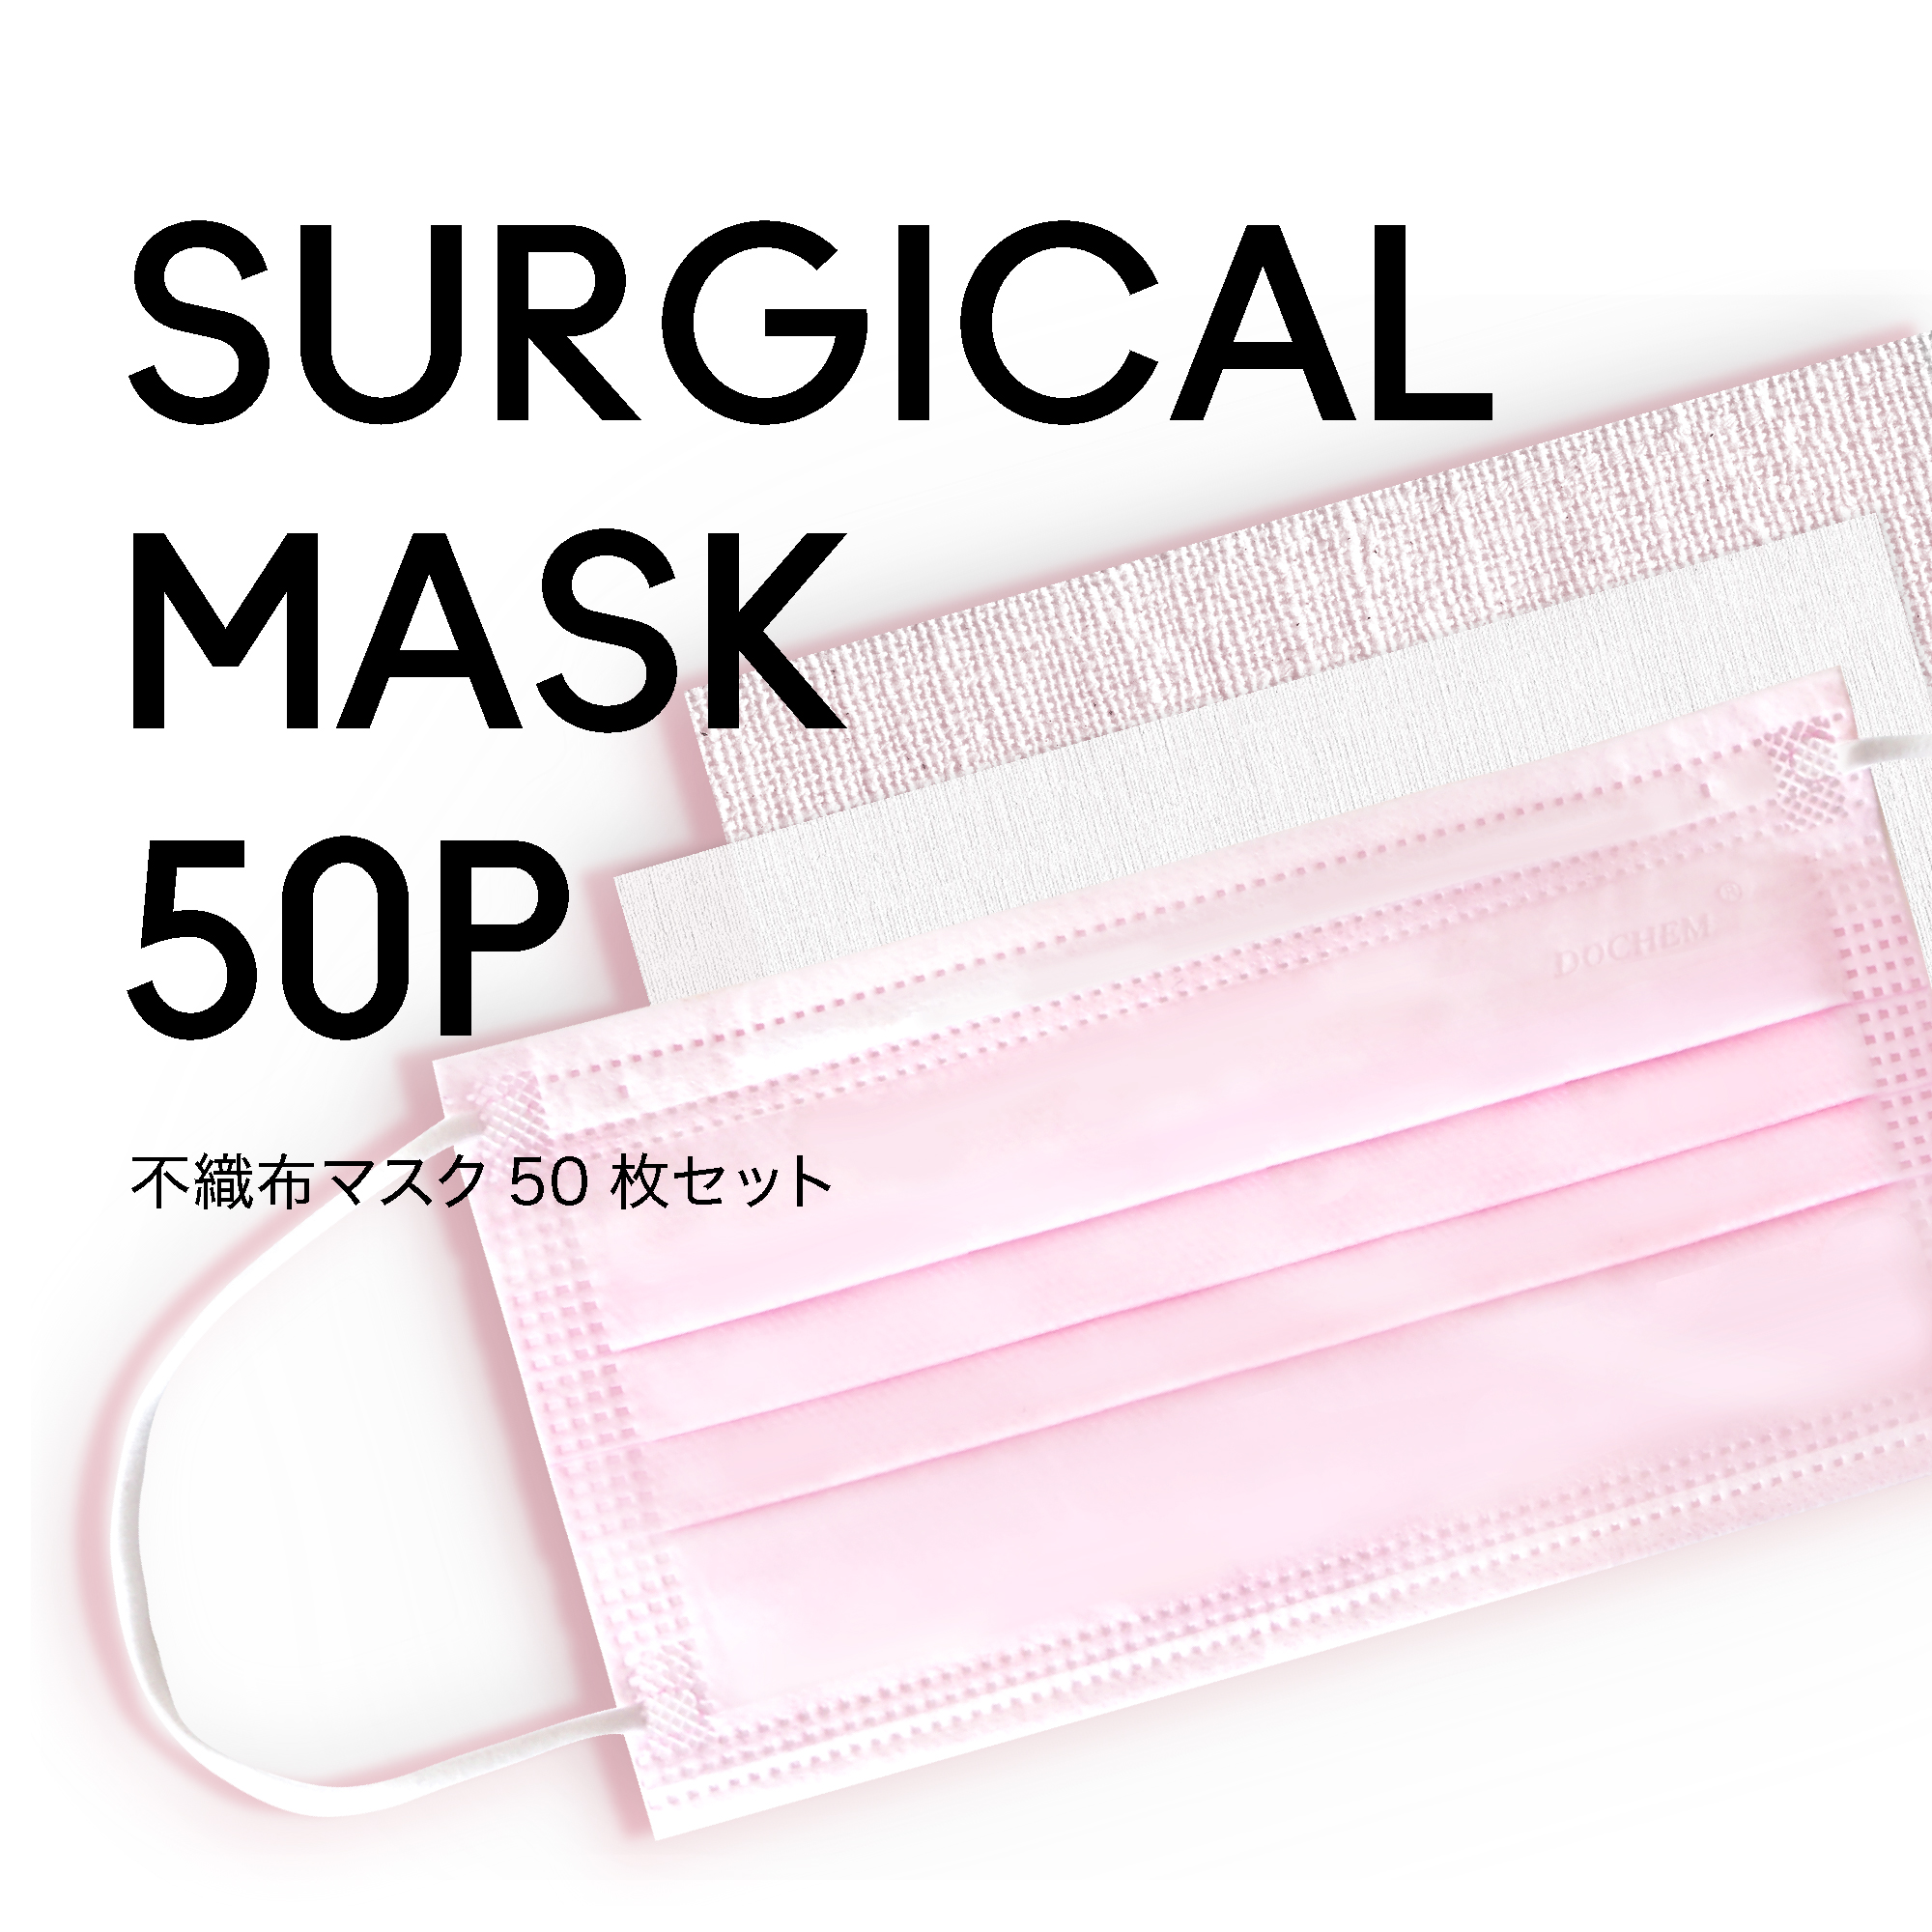 マスク ピンク 50枚セット 業務用 Ladycoco公式ストアのまつげエクステ商材